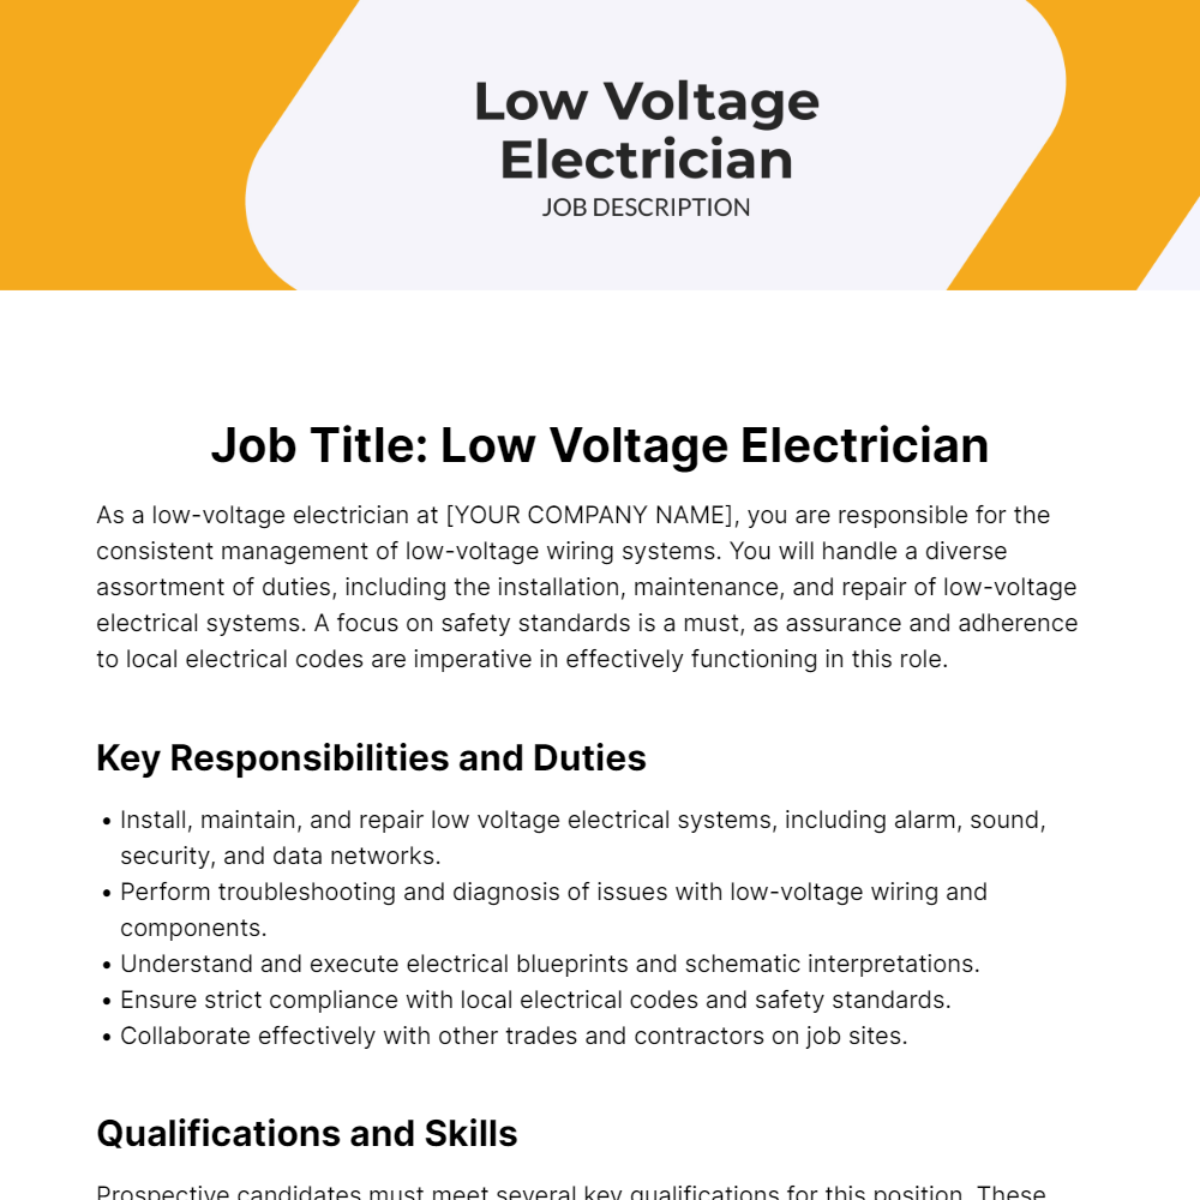 Low Voltage Electrician Job Description Template